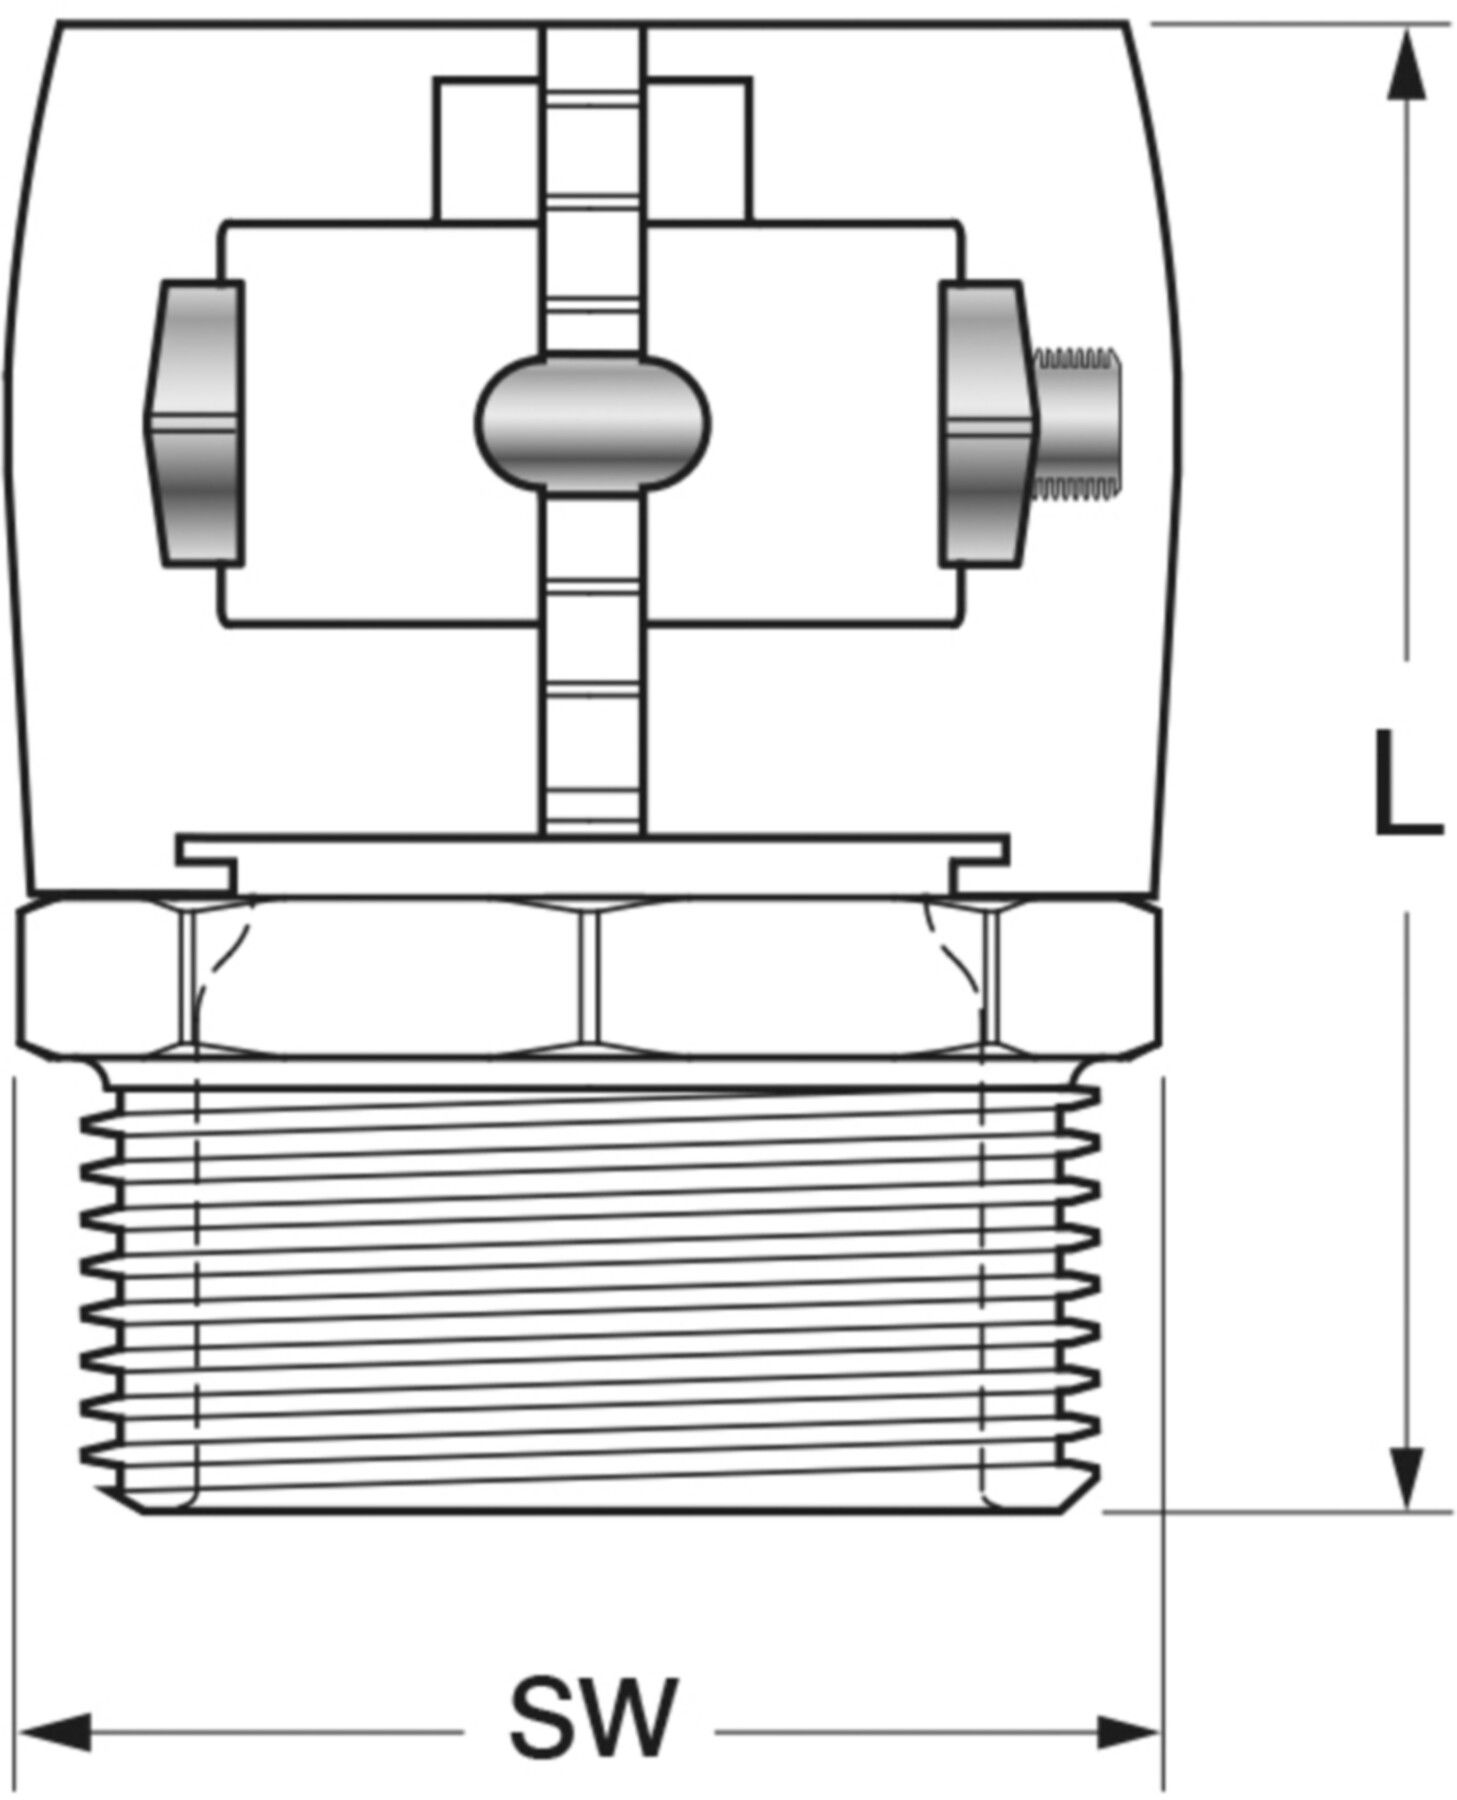 Klemm-Verbindungen mit Aussengewinde Jentro S - 40 11/4" - Isopex Fernwärmeleitung